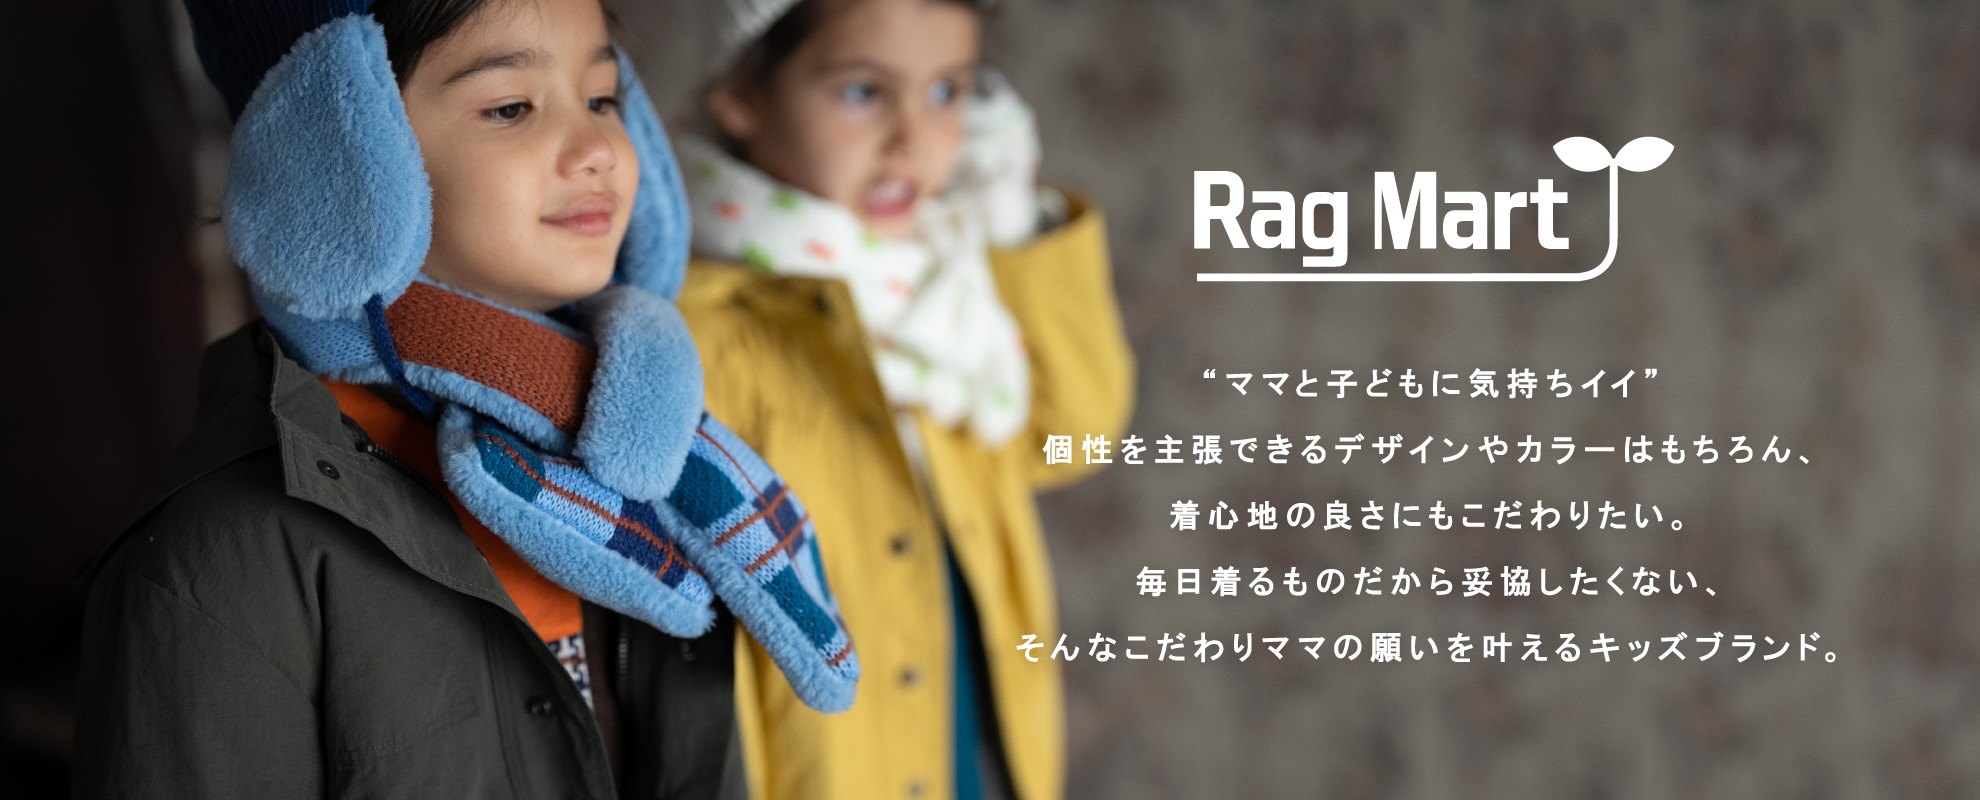 RAG MART | ラグマートオンラインショップ【公式】 - 子供服